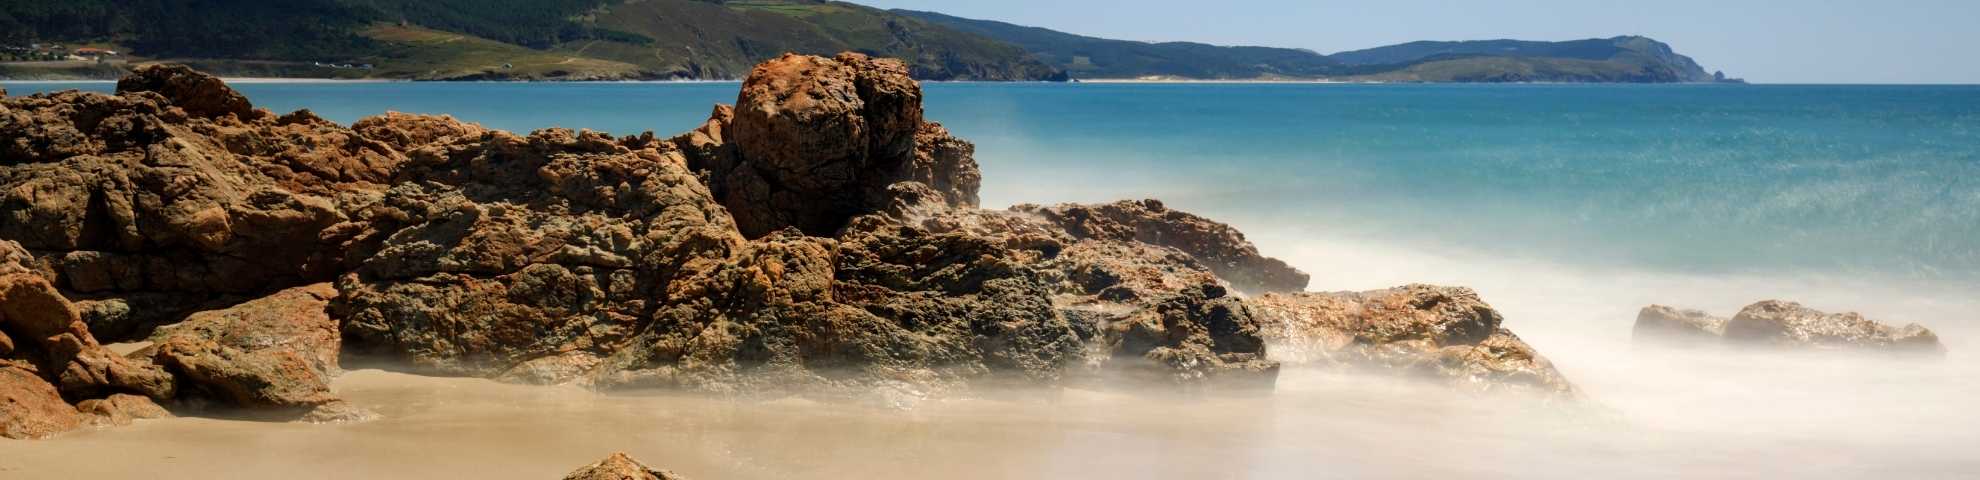 Playa de Nemiña